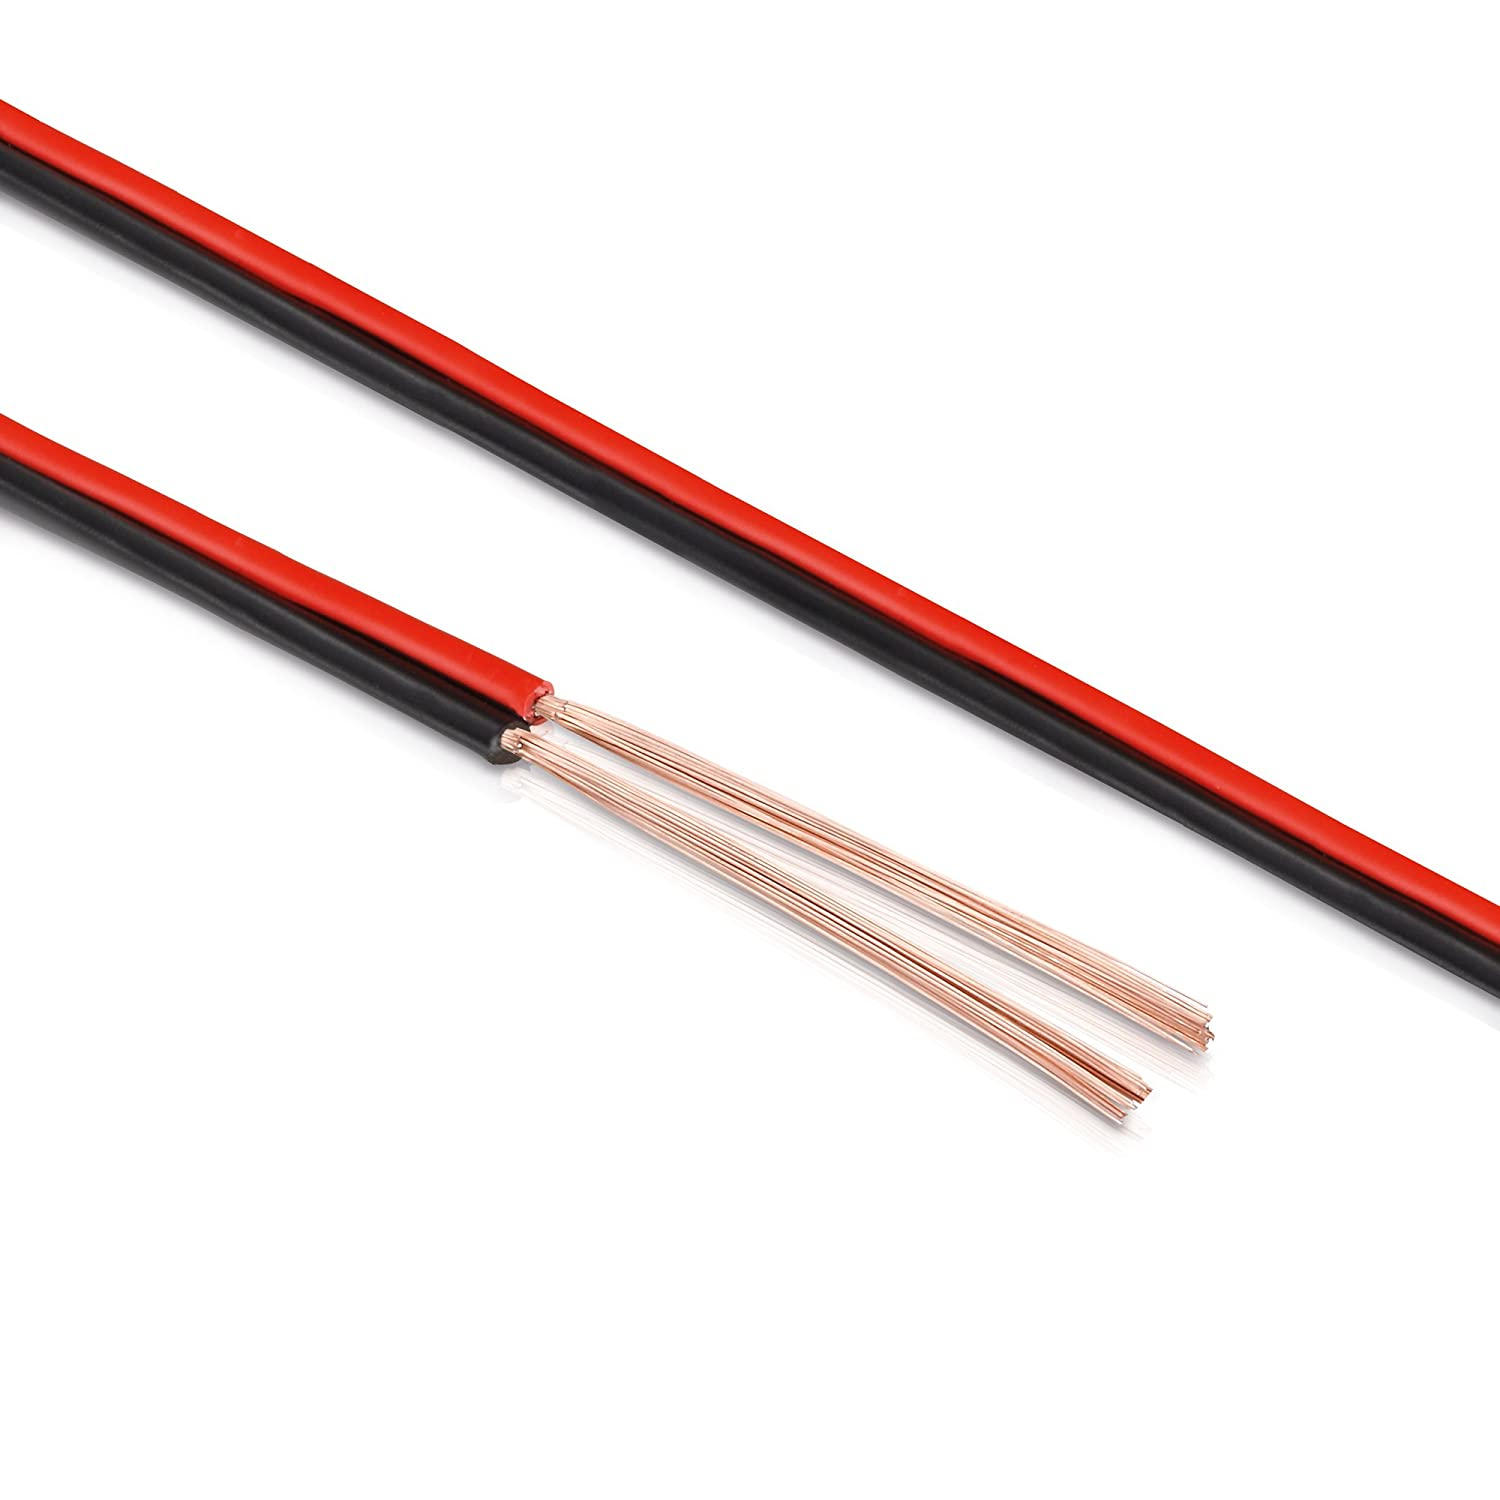 Cable de audio para altavoces rojo y negro de 2x1,50 mm² Bobina de